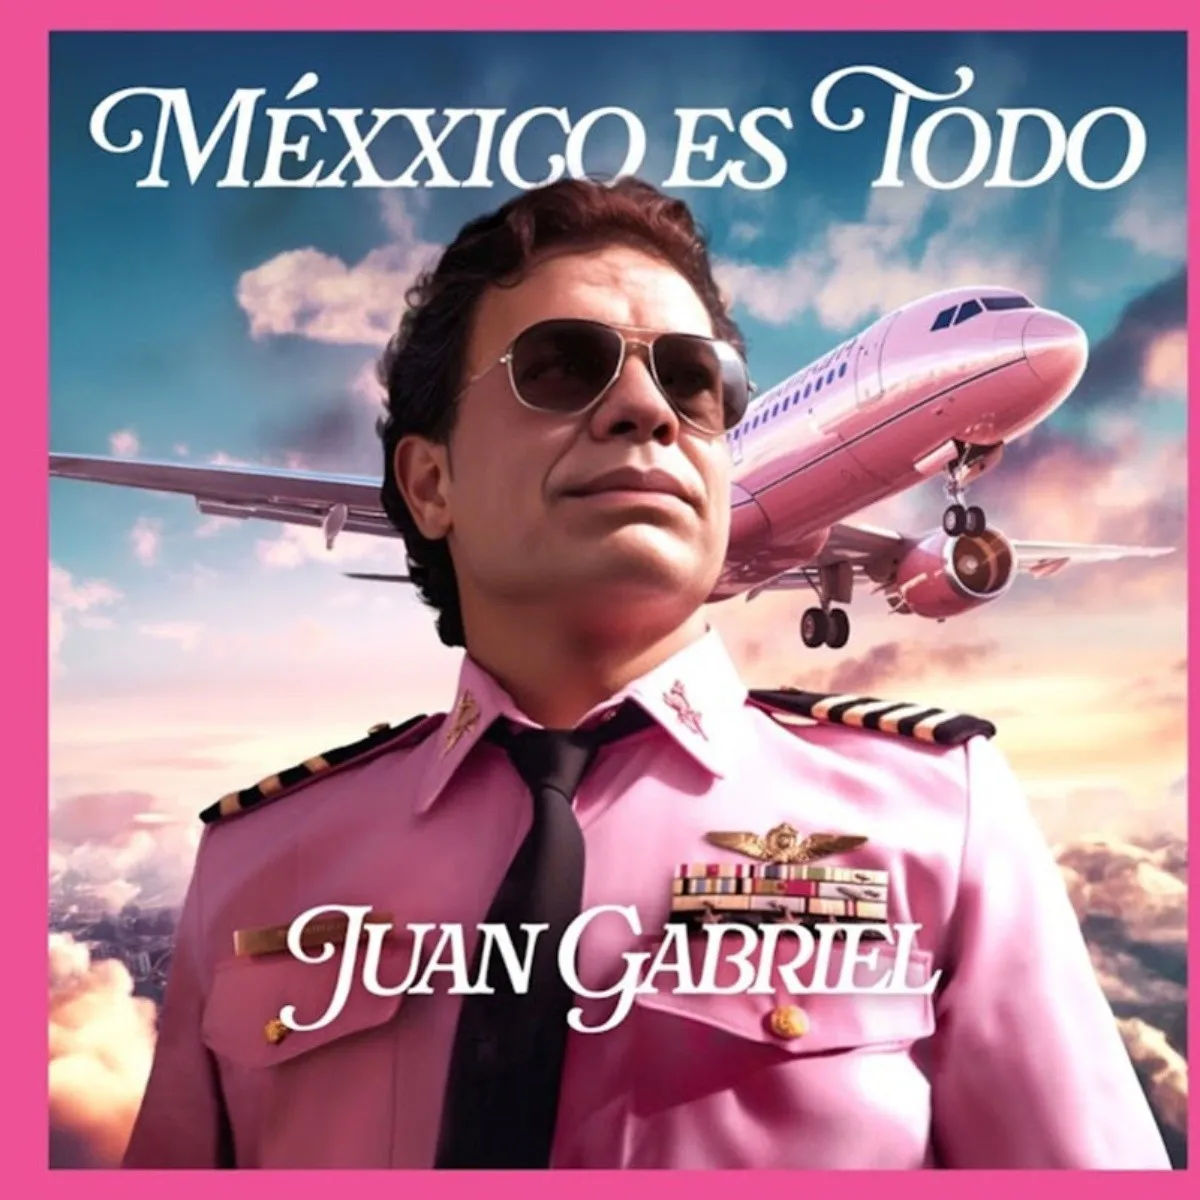 Juan Gabriel 'regresa' en nuevo disco póstumo: te decimos cuándo se estrena  - Canal 13 México